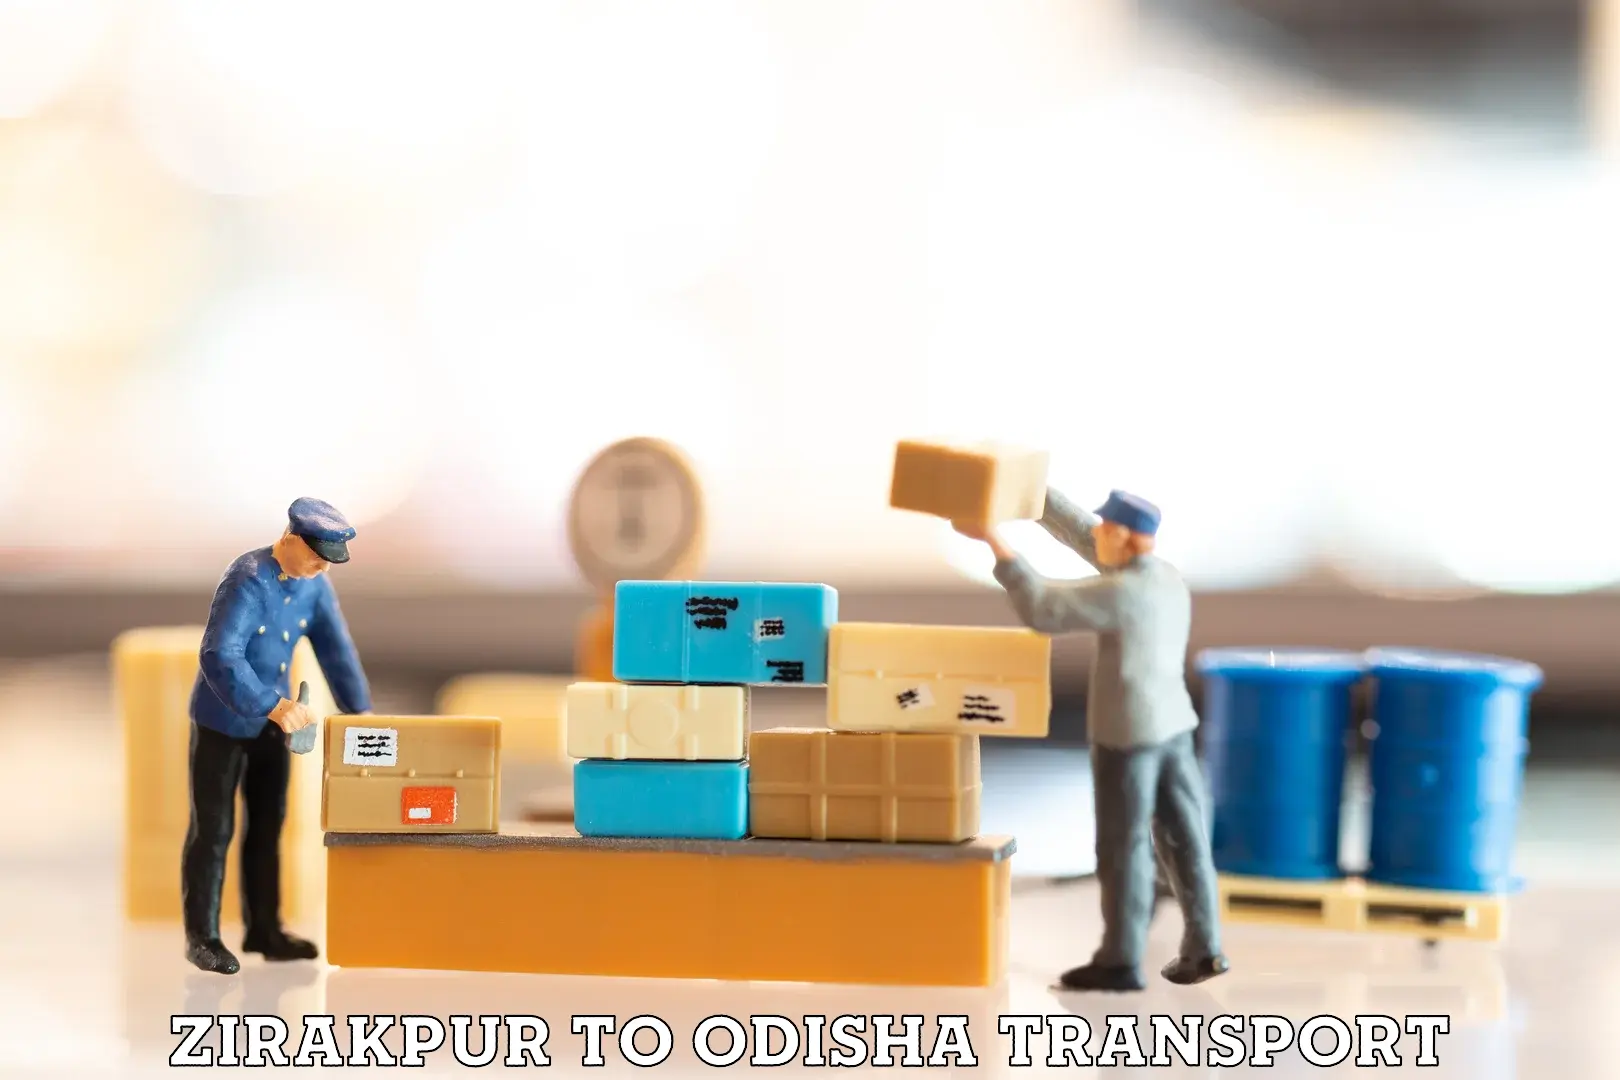 Furniture transport service Zirakpur to Raj Berhampur